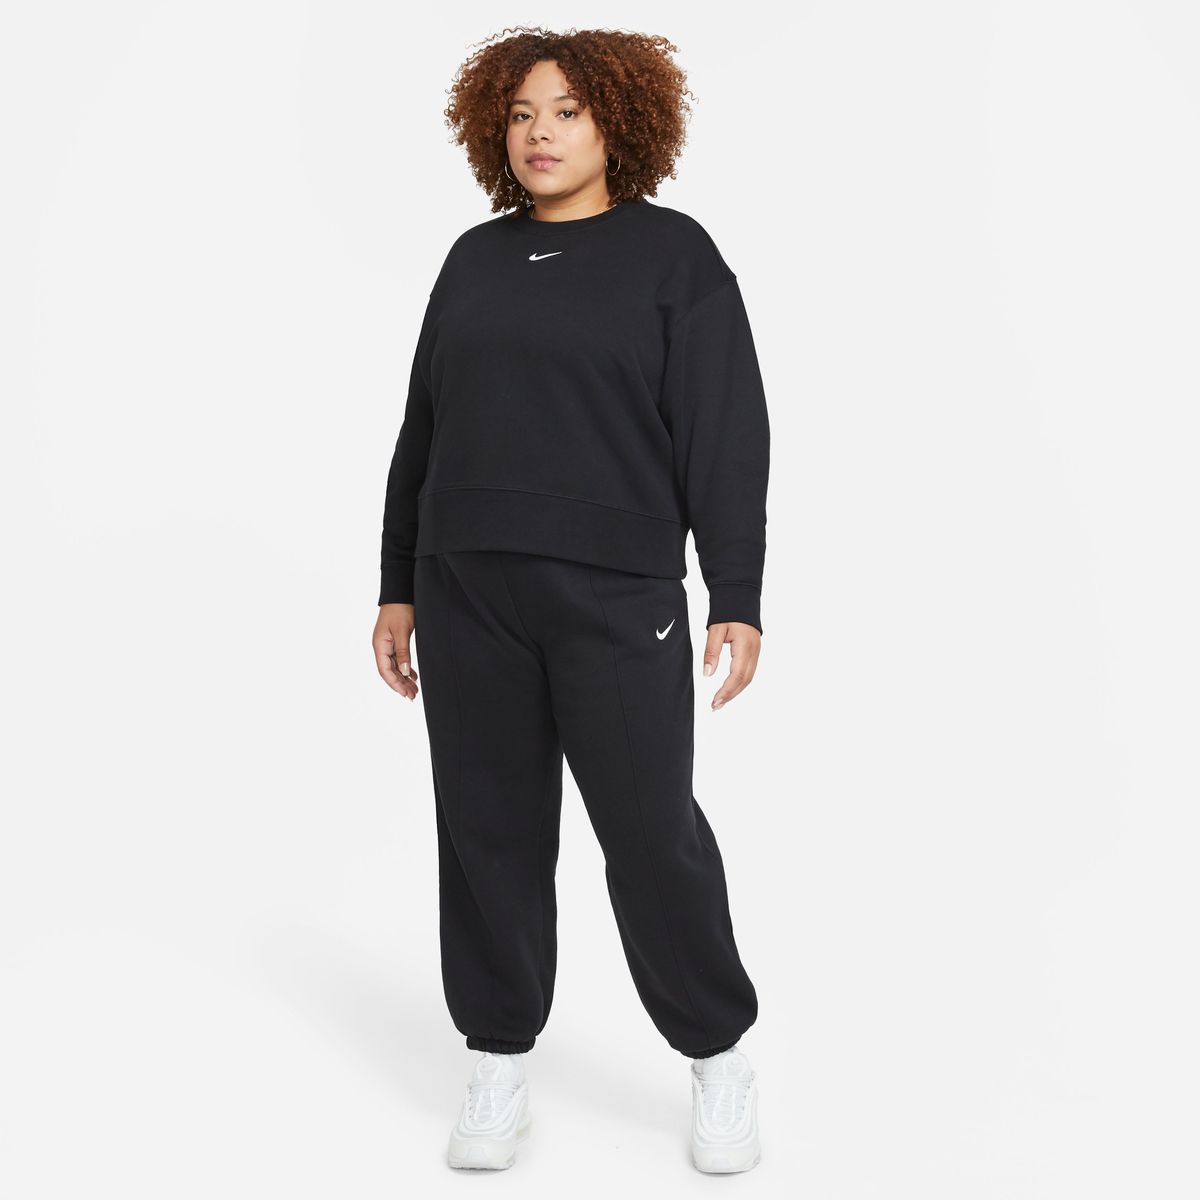 Nike Sportswear Collection Essentials Oversized Crew Damen Sweatshirt_1